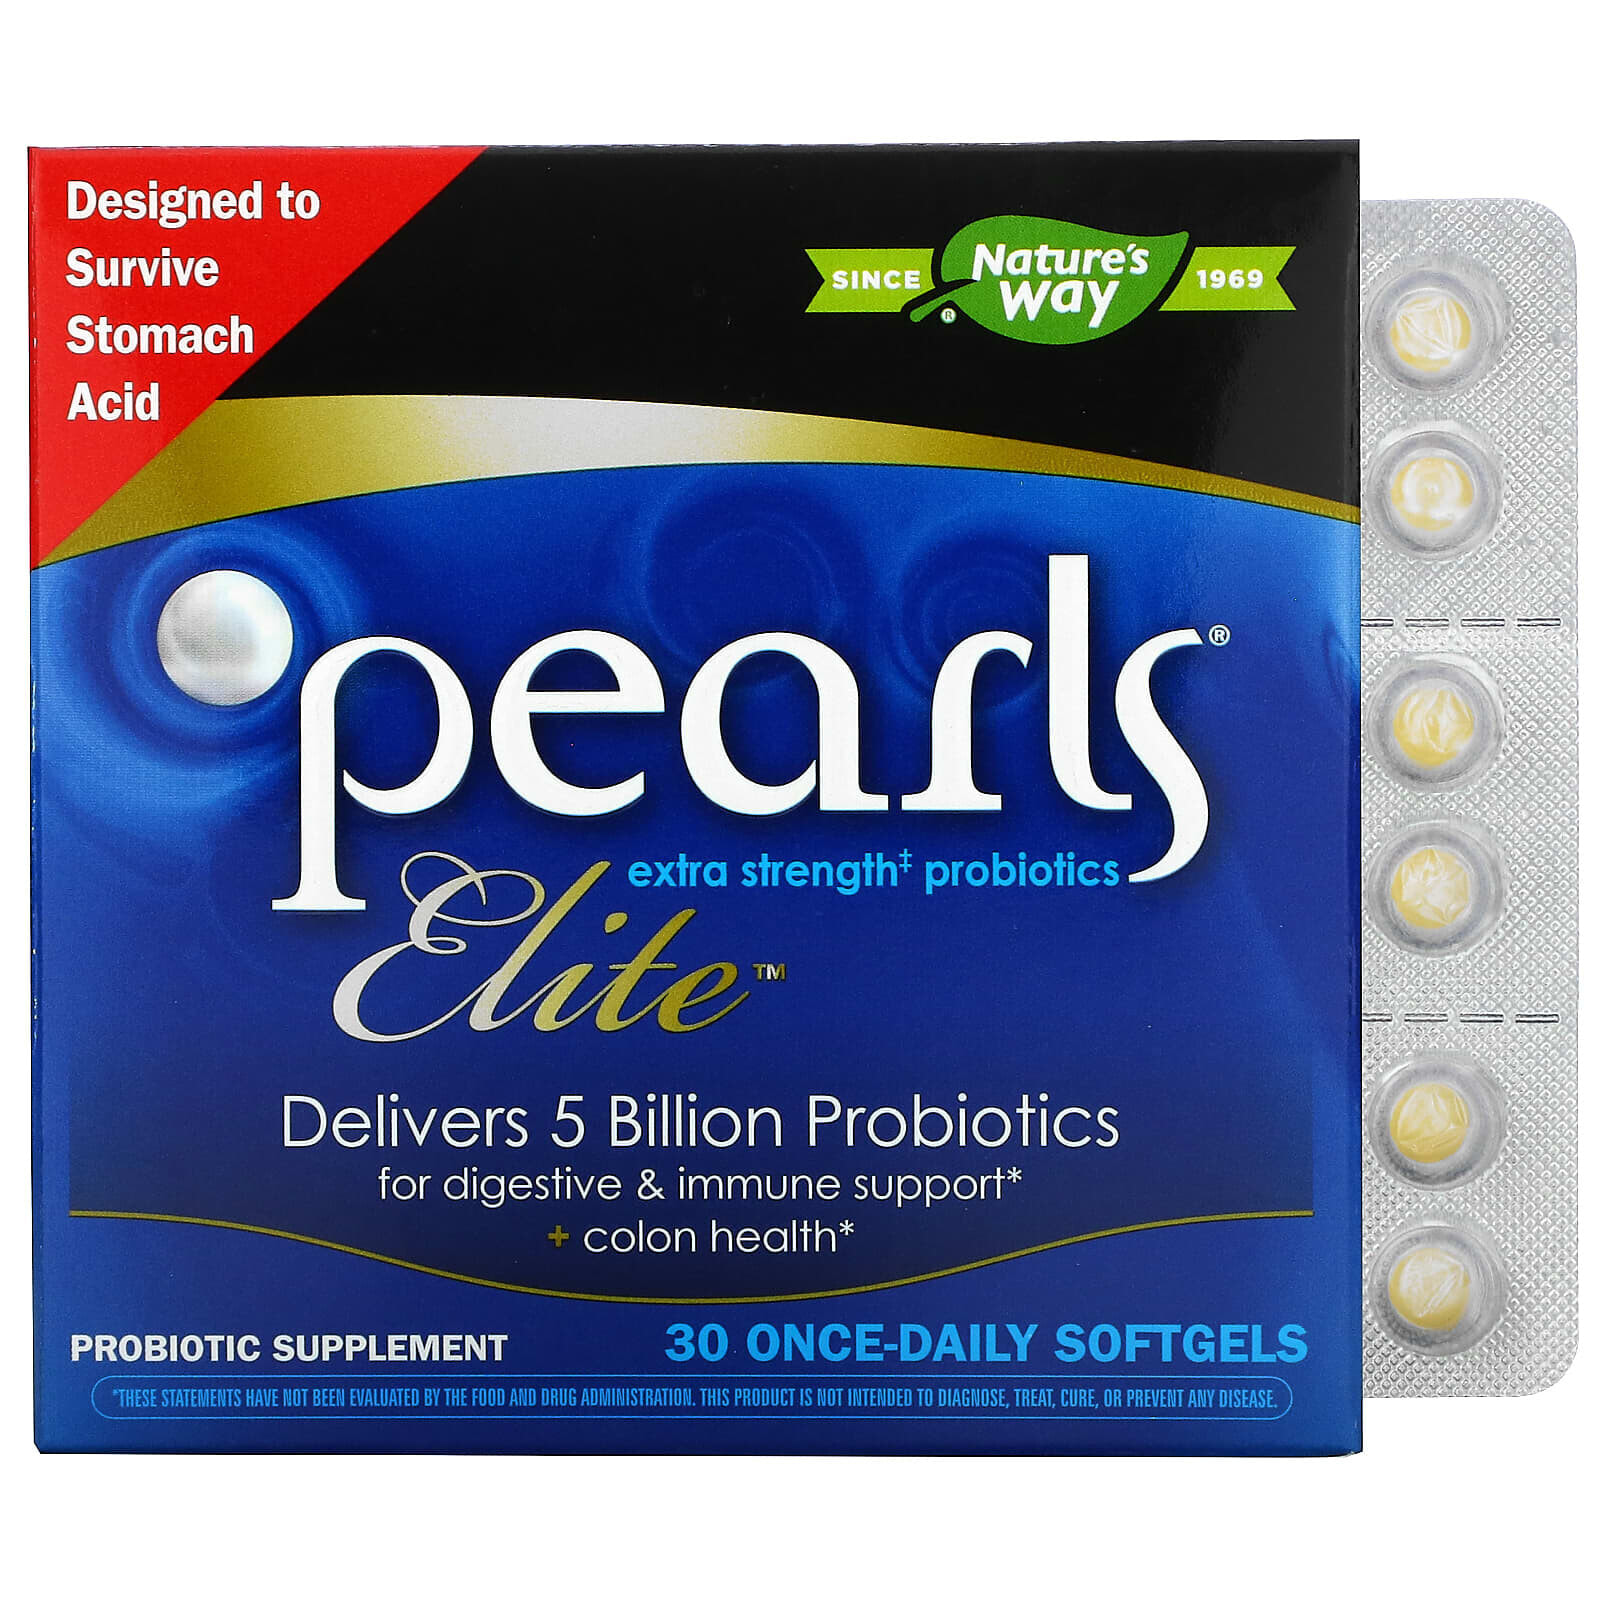 Натурес Вэй, Pearls Elite, пробиотики с повышенной силой действия, 30 капсул для приема один раз в день